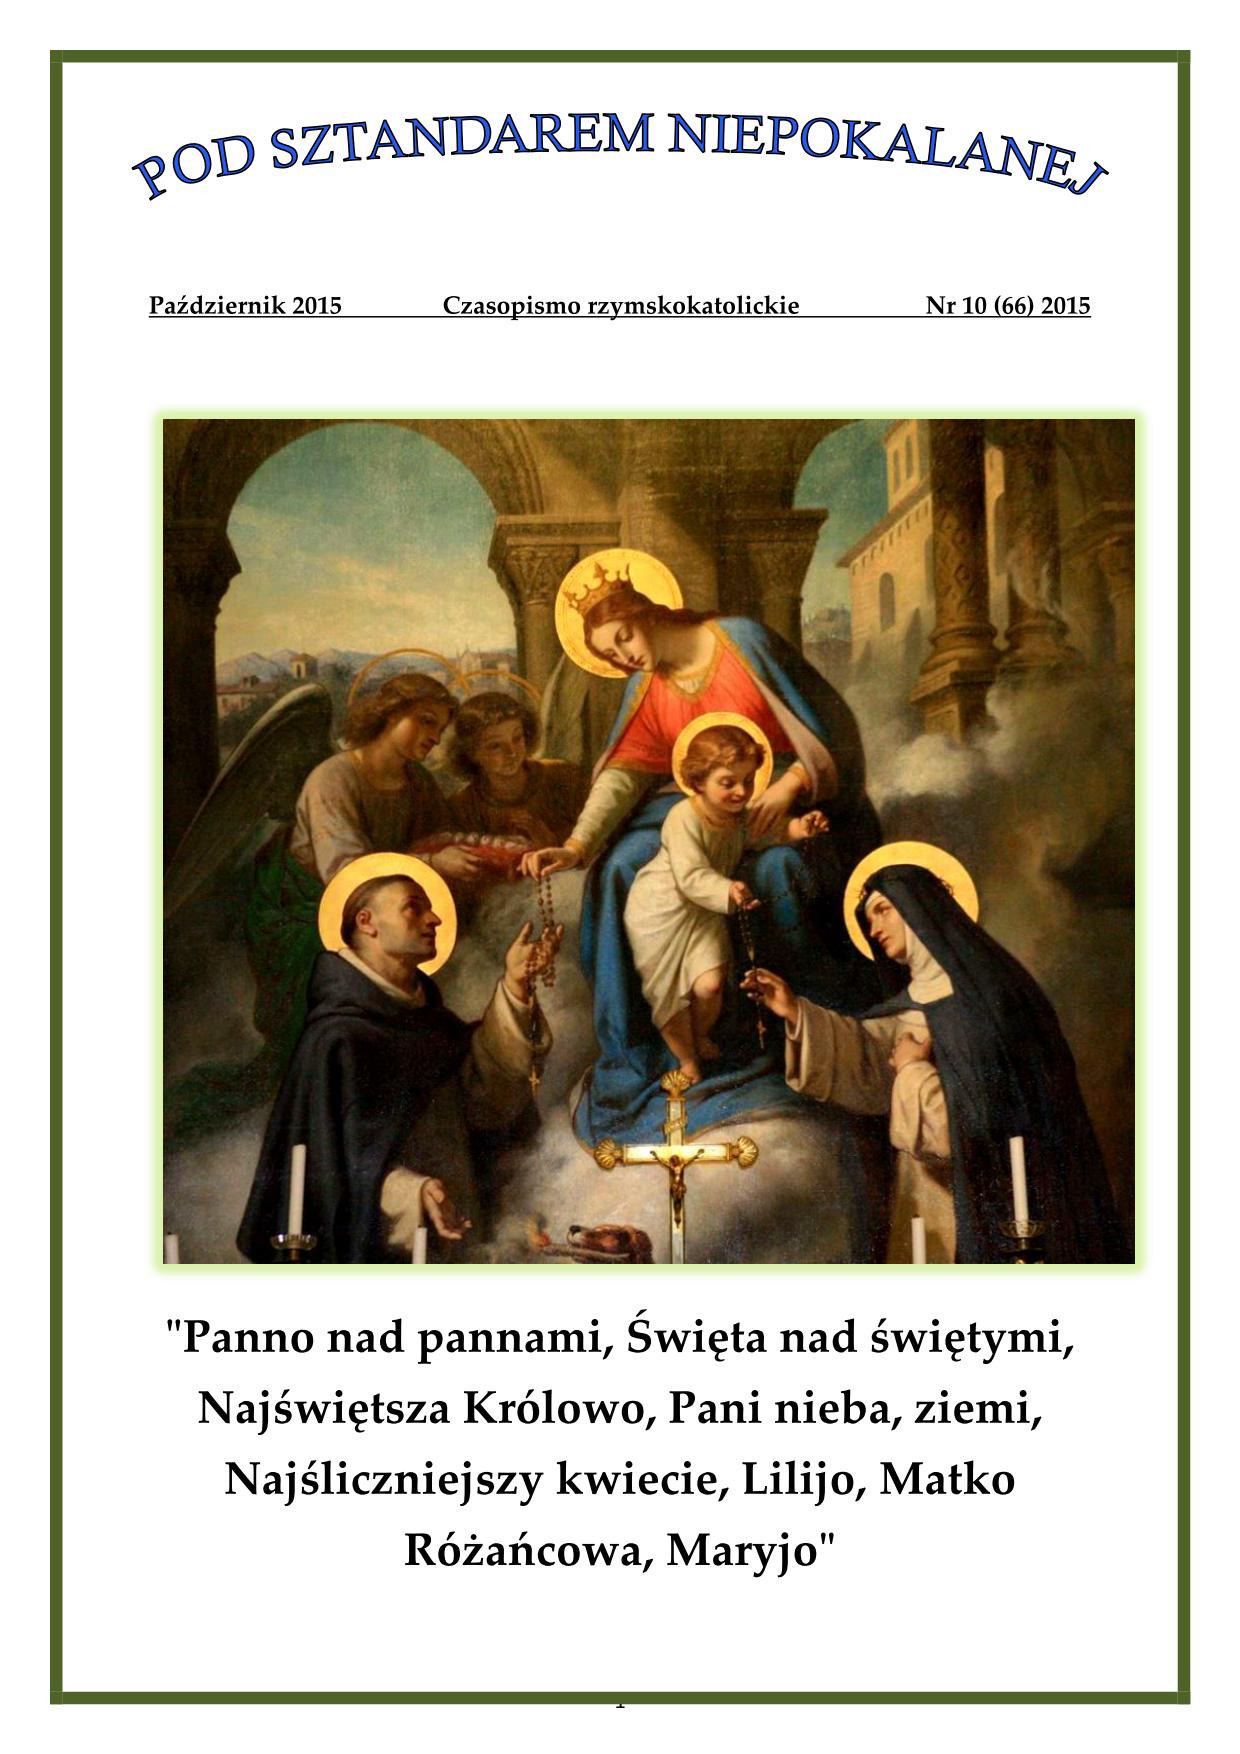 "Pod sztandarem Niepokalanej". Nr 66. Październik 2015. Czasopismo rzymskokatolickie.